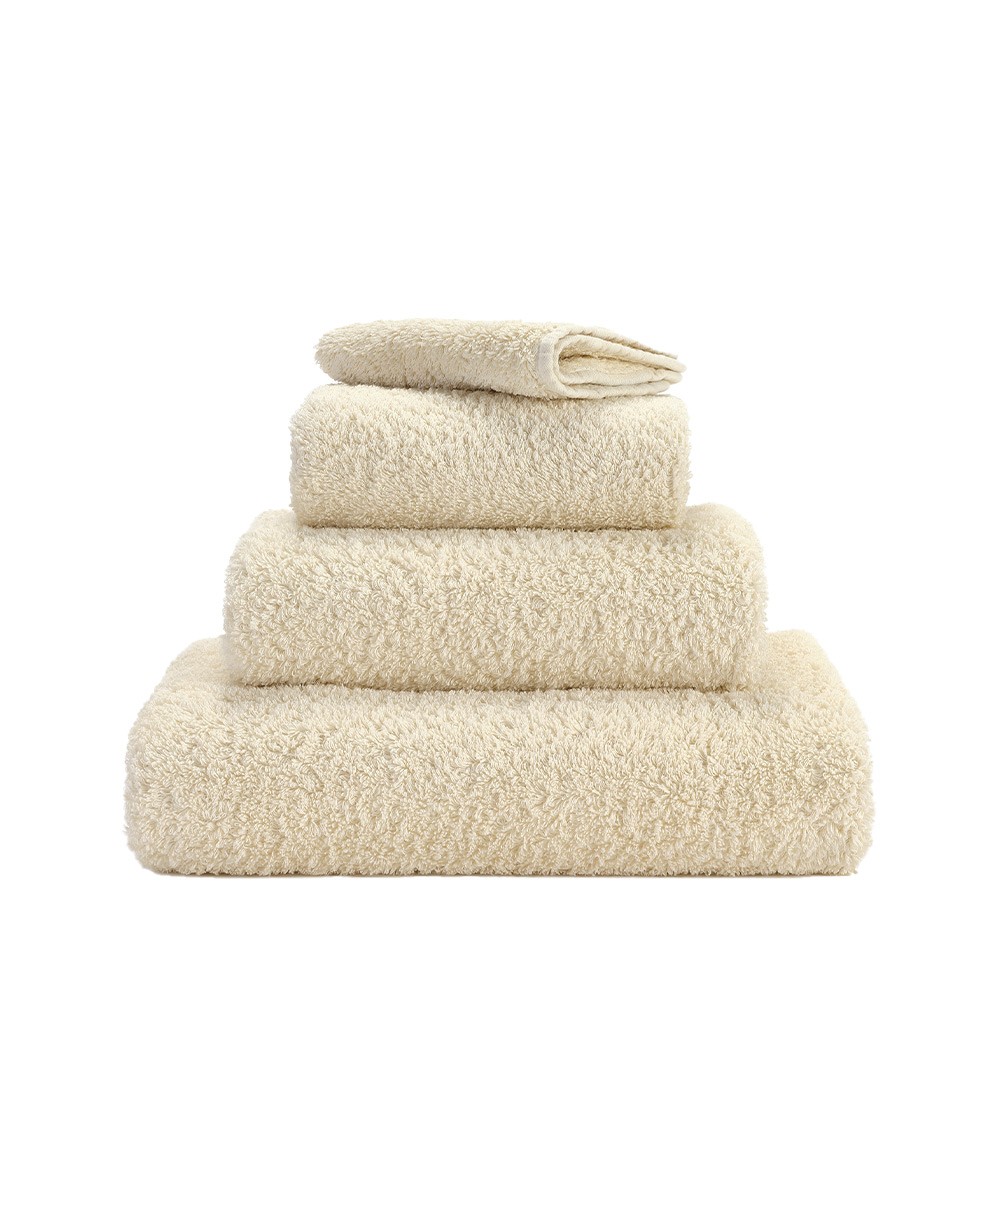 Produktbild des Handtuch Super Pile aus ägyptischer Baumwolle der Marke Abyss & Habidecor im RAUM concept store